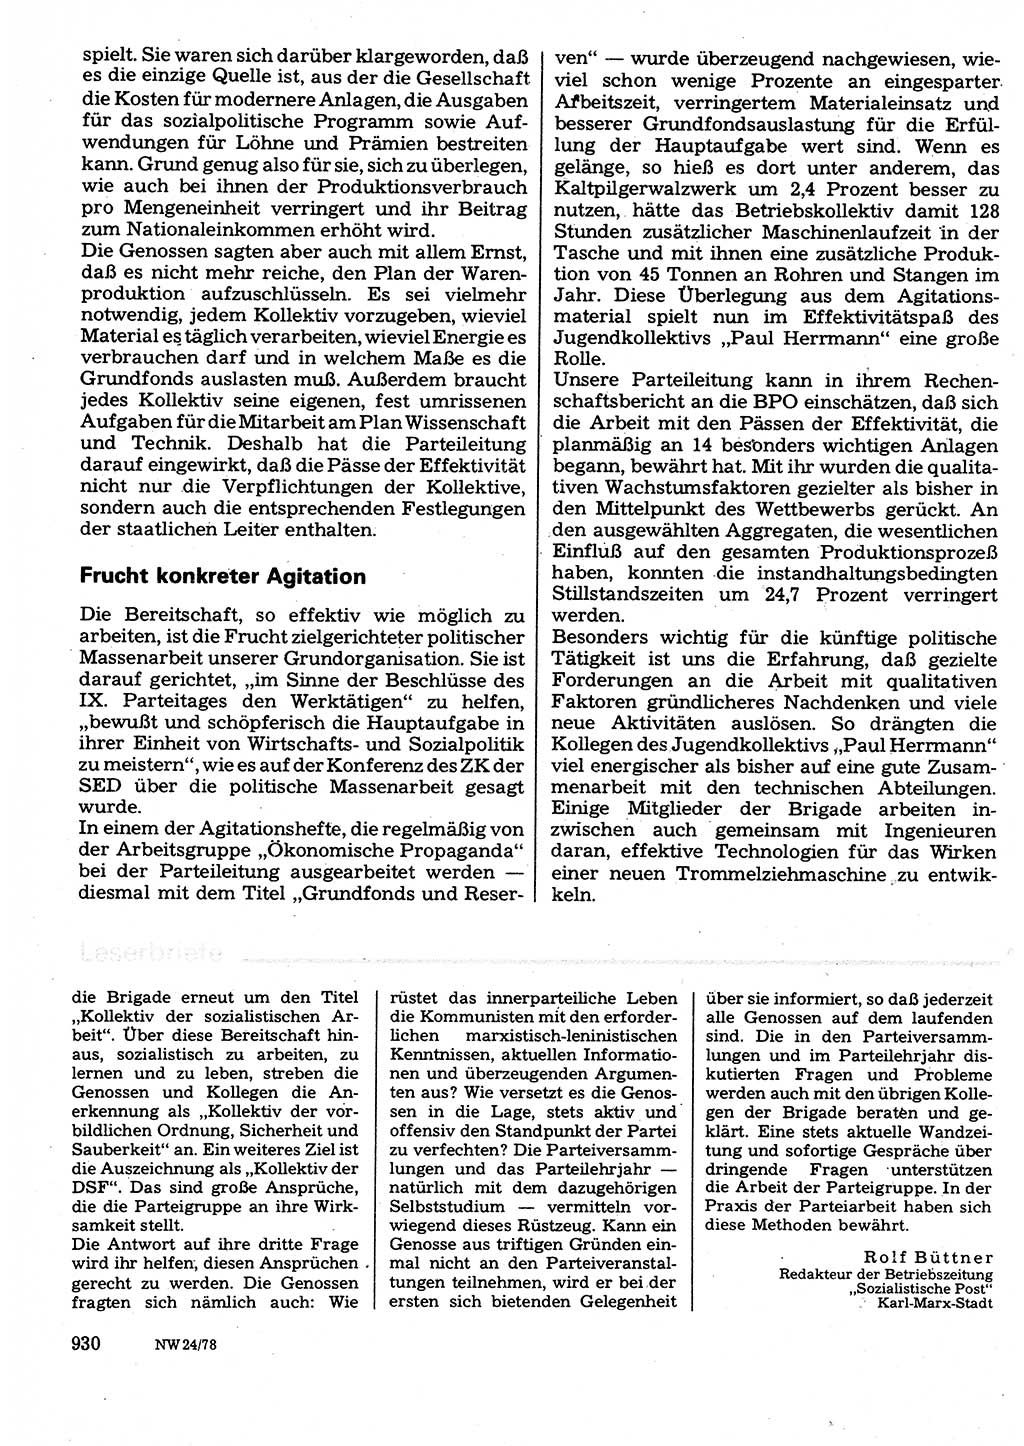 Neuer Weg (NW), Organ des Zentralkomitees (ZK) der SED (Sozialistische Einheitspartei Deutschlands) für Fragen des Parteilebens, 33. Jahrgang [Deutsche Demokratische Republik (DDR)] 1978, Seite 930 (NW ZK SED DDR 1978, S. 930)